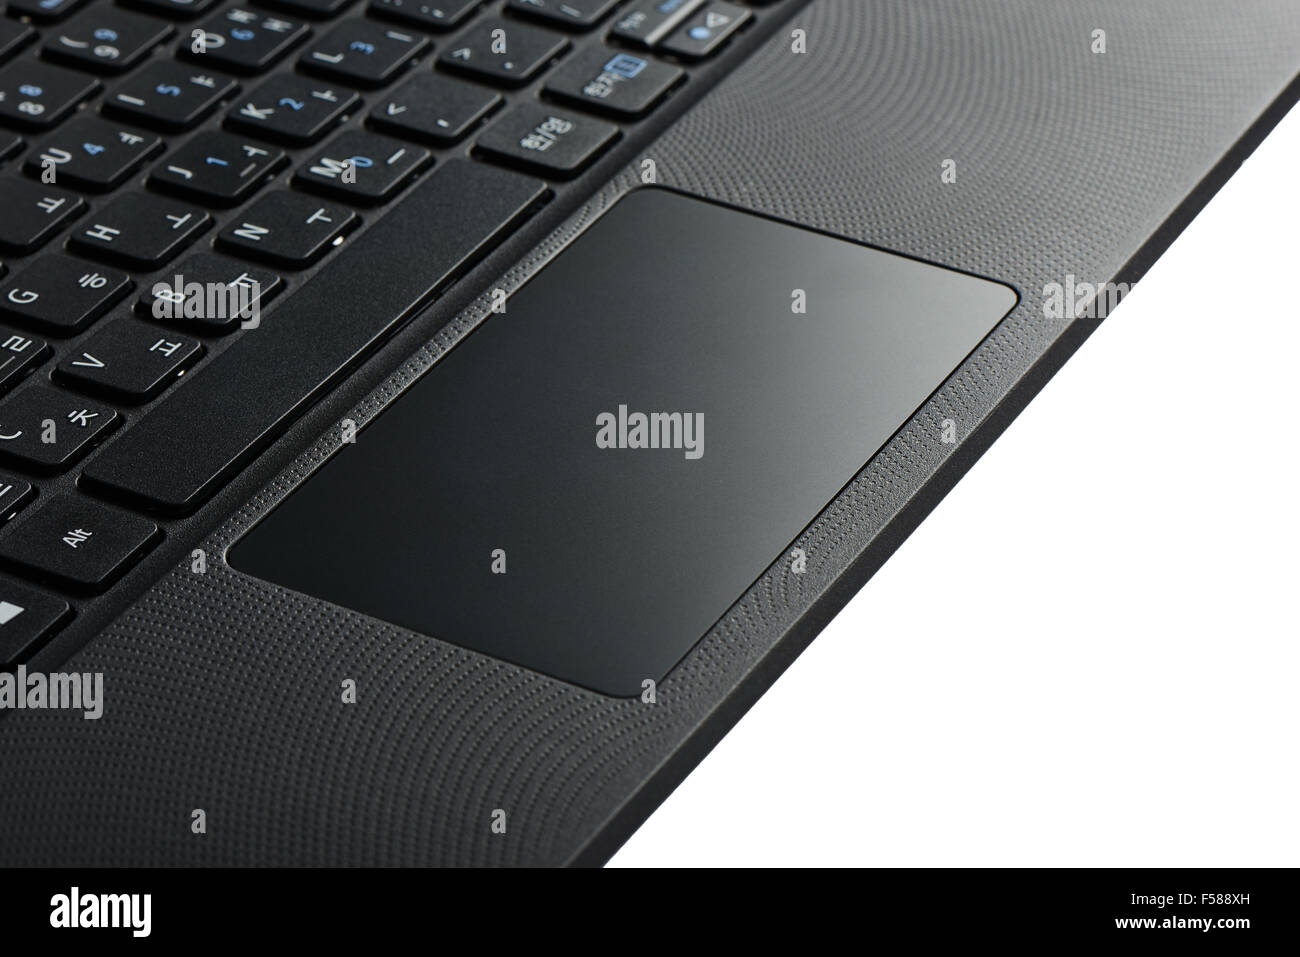 Gros plan du clavier et pavé tactile d'un ordinateur portable Banque D'Images